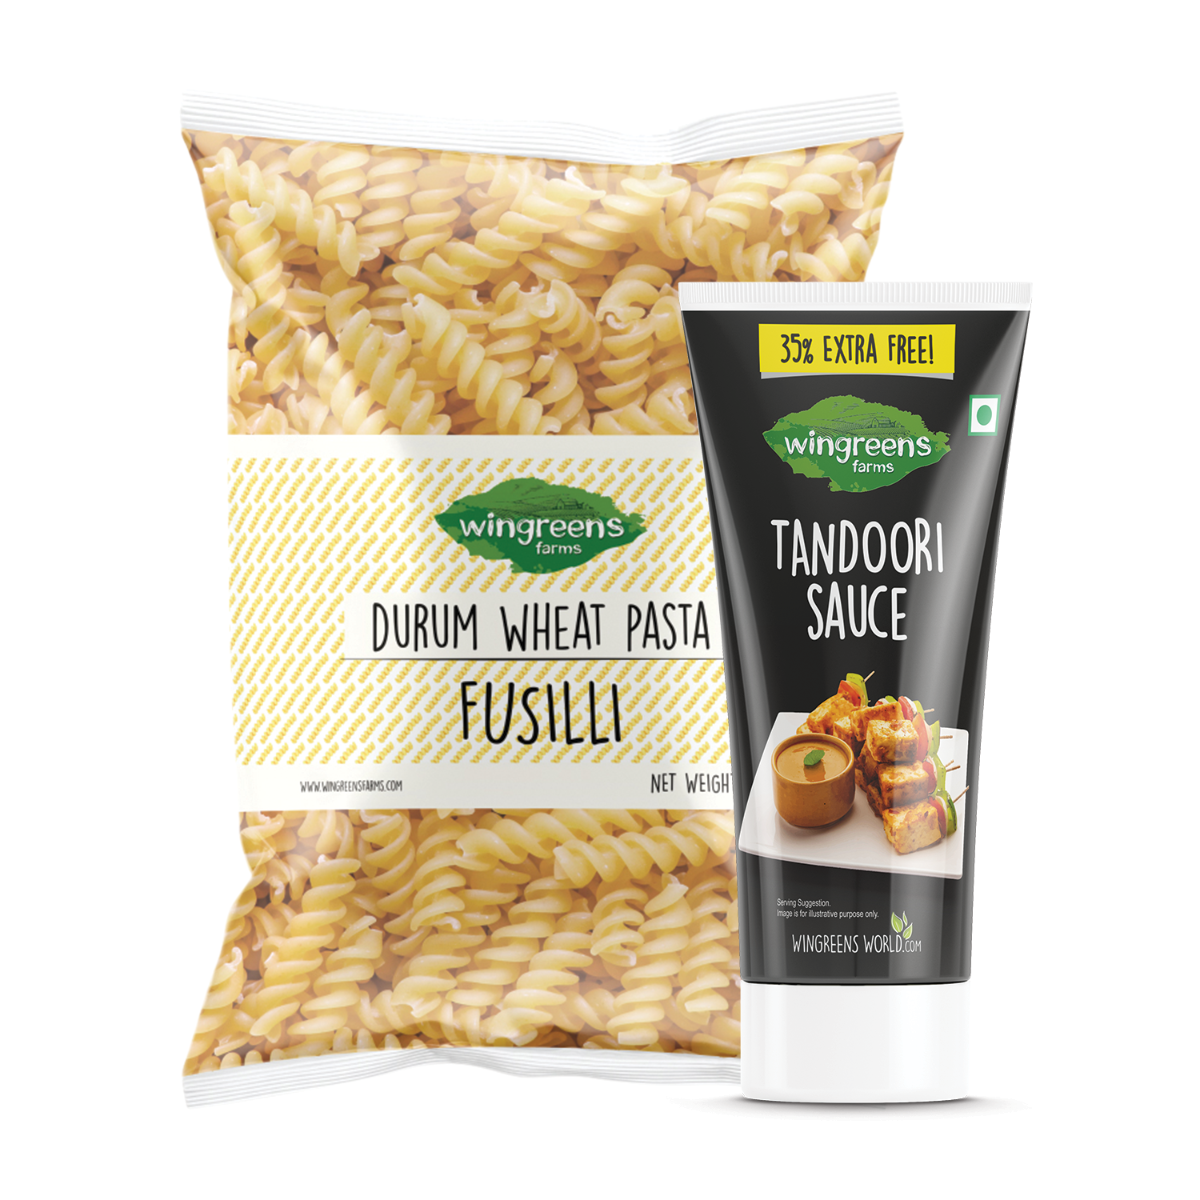 Fusilli (400g) with Tandoori Sauce (180g)